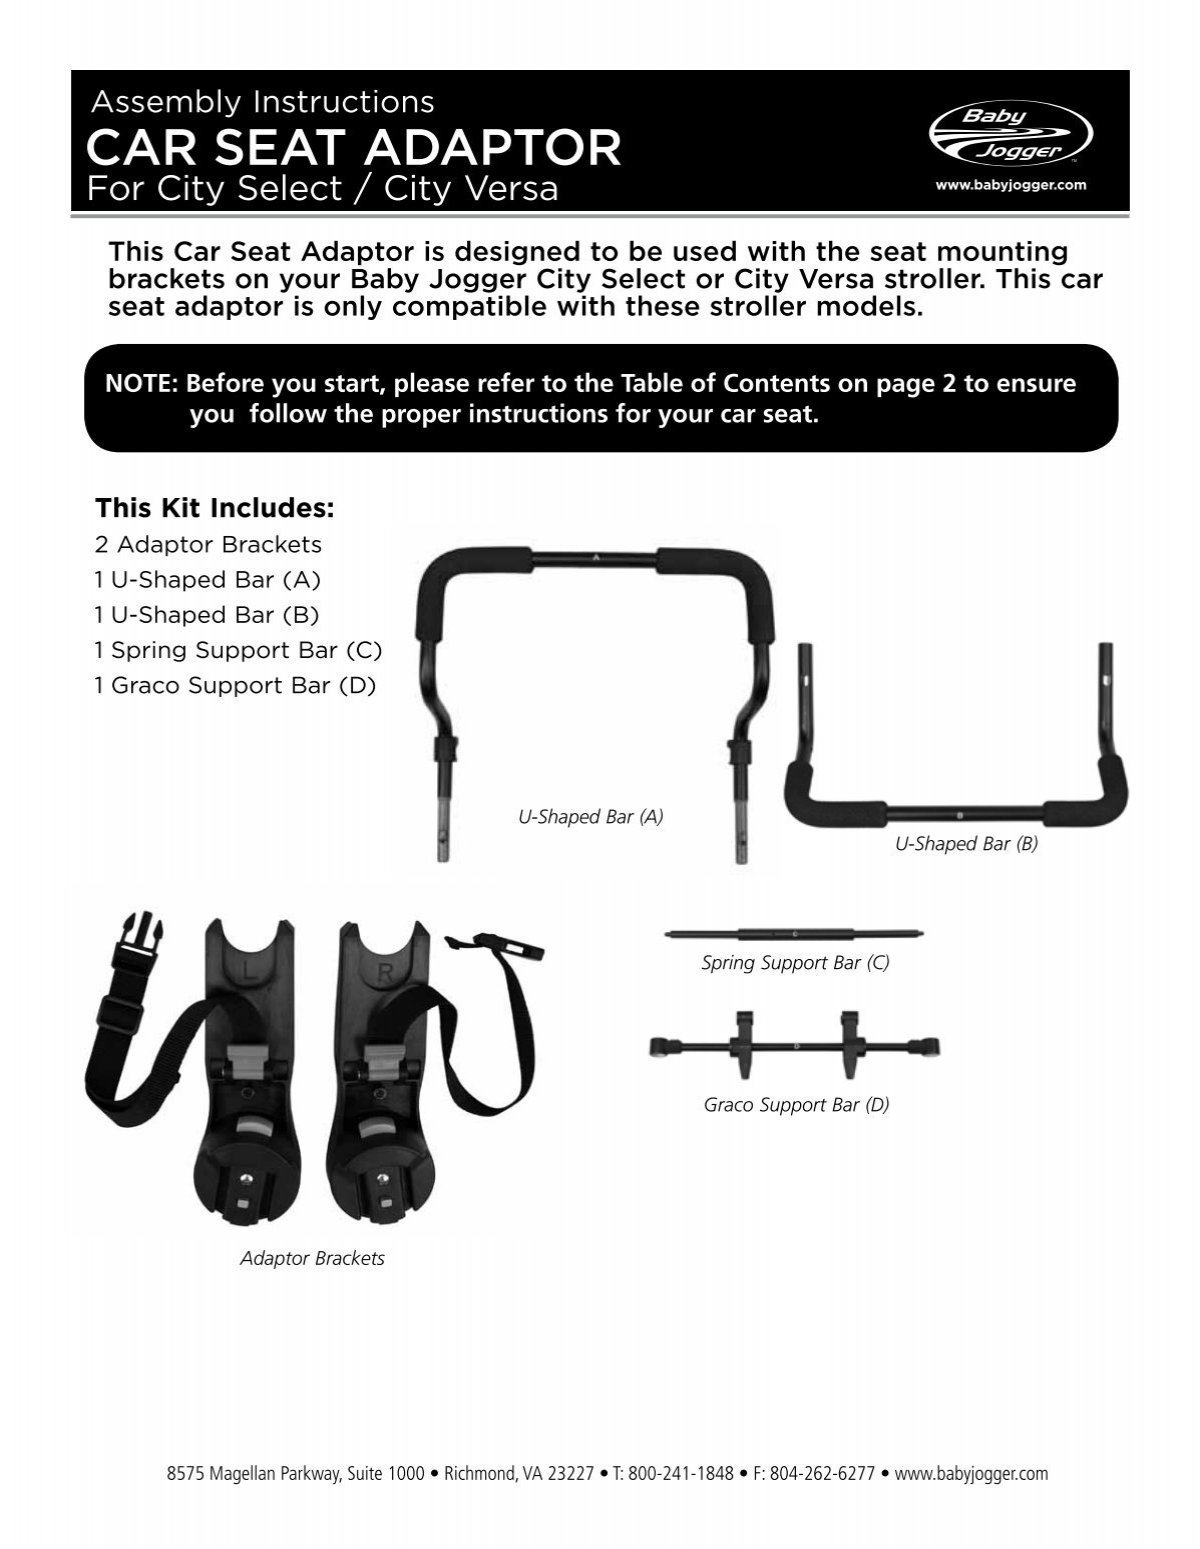 City Mini Gt Stroller In A Dimpa Bag Ikea Hackers City Mini Gt Baby Jogger City Mini Gate Check Stroller Bag